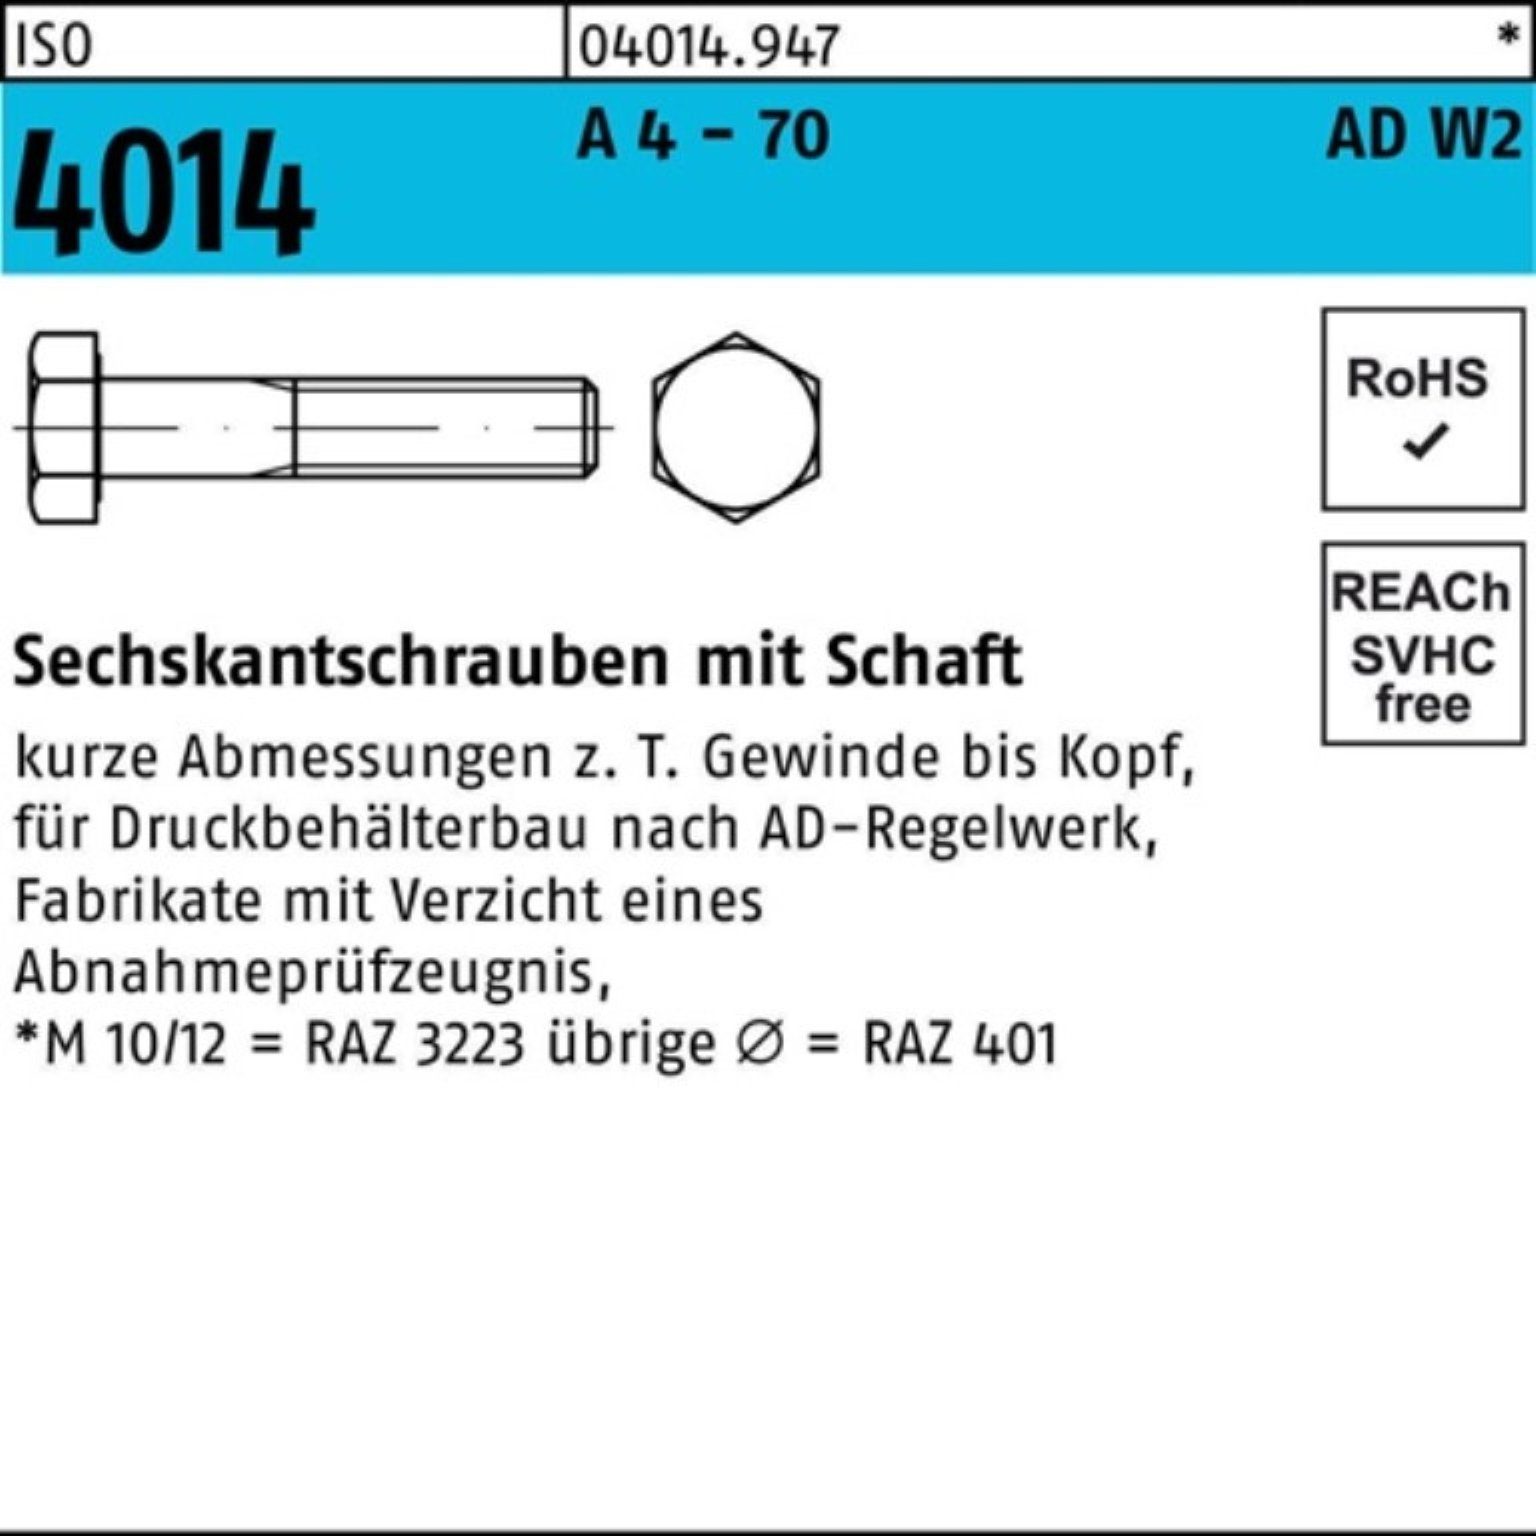 Bufab Sechskantschraube 100er Pack Sechskantschraube ISO 4014 Schaft M10x 90 A 4 - 70 AD-W2 50